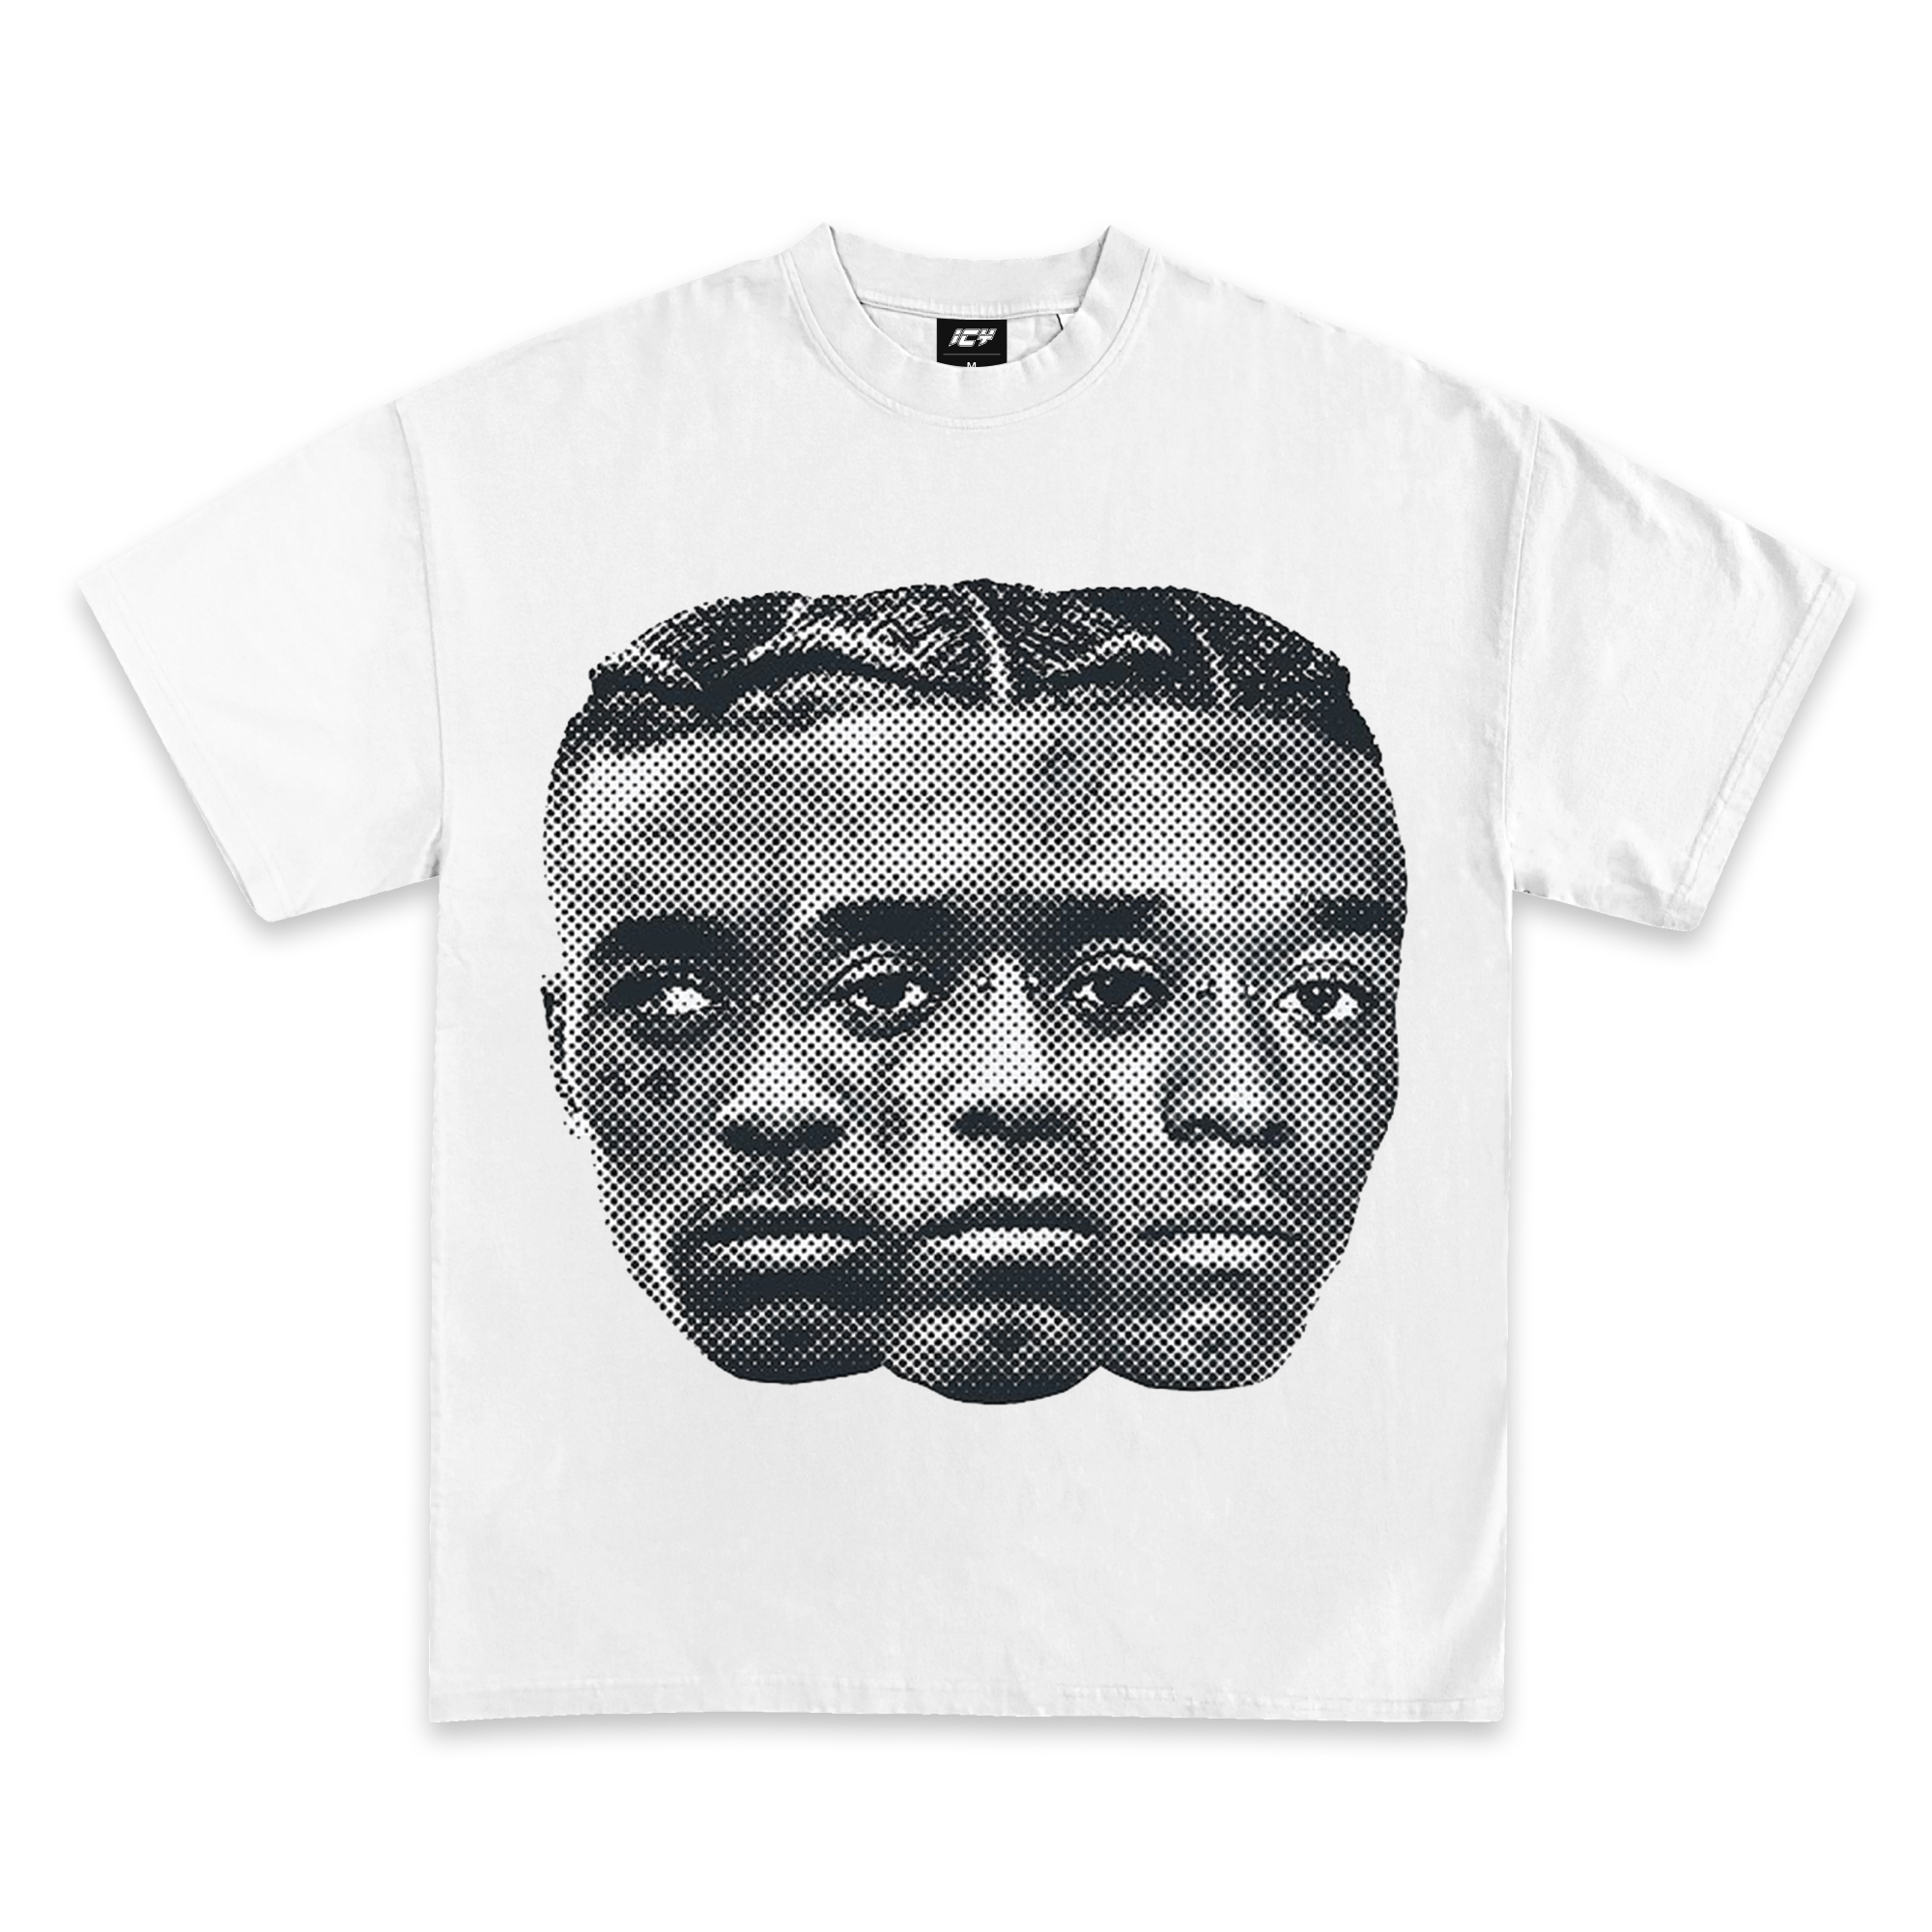 Lil Uzi Vert Jumbo Graphic T-Shirt